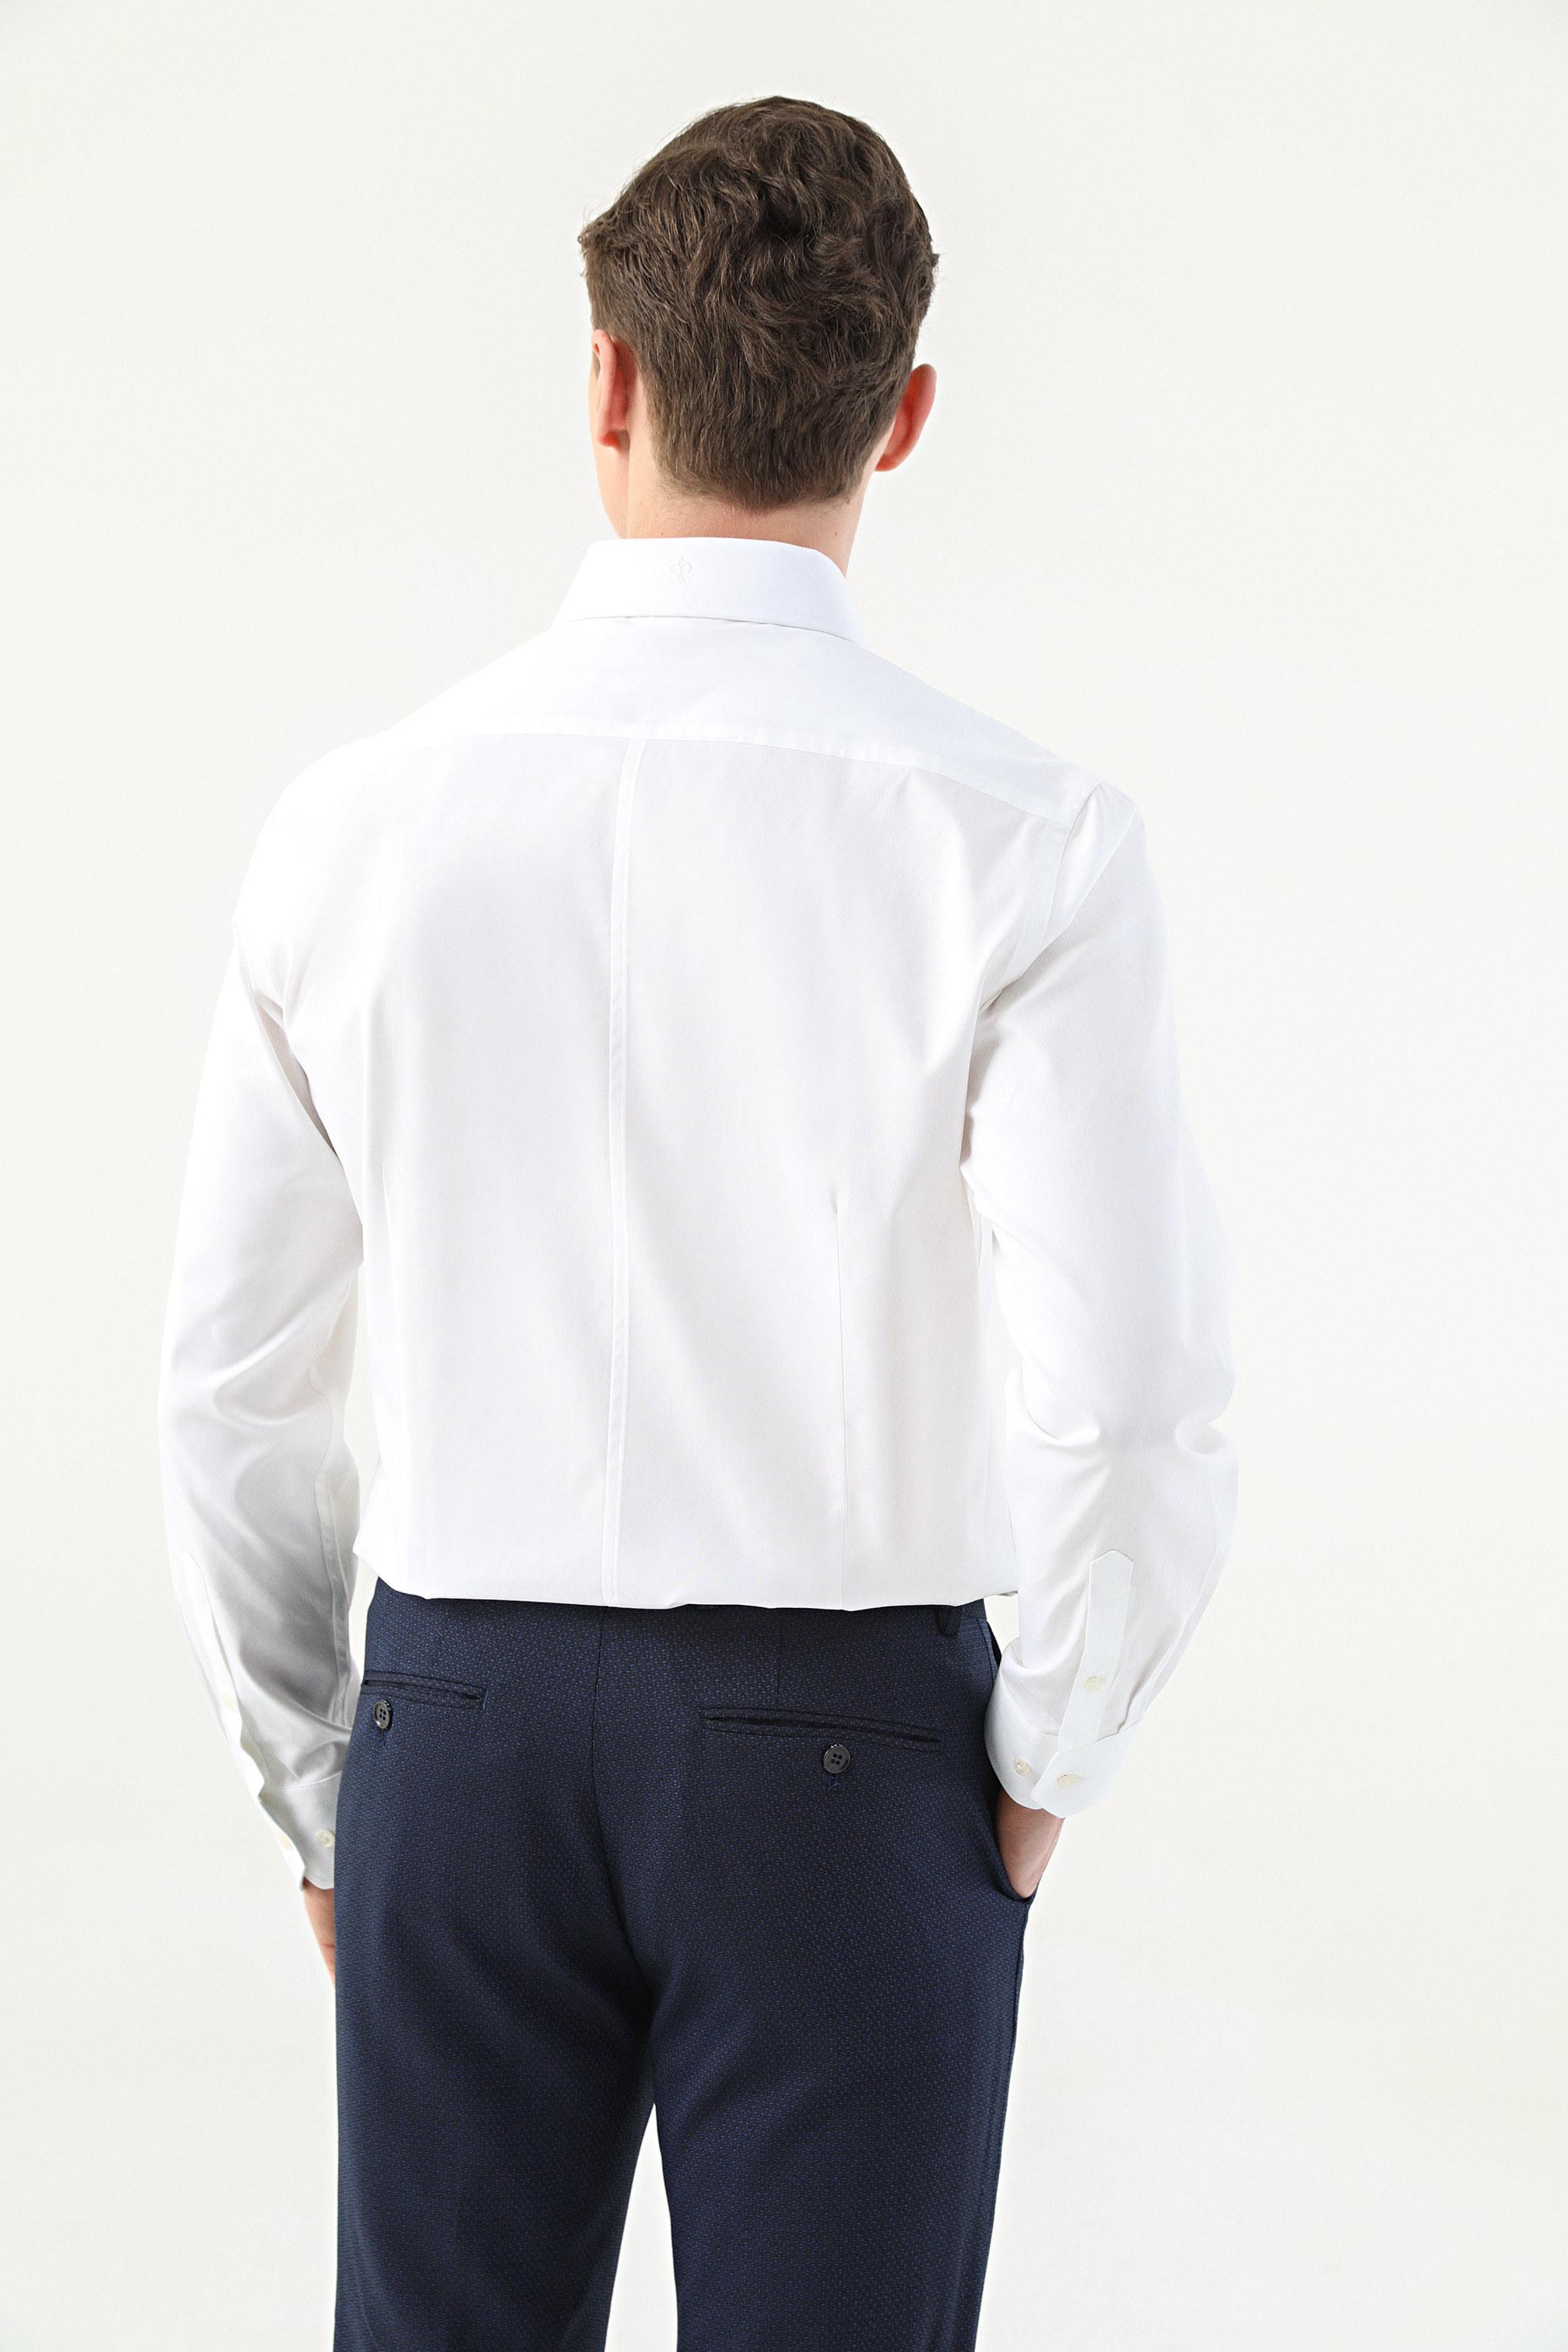 Damat Tween Damat Slim Fit Beyaz Desenli %100 Pamuk Nano Care Gömlek. 4